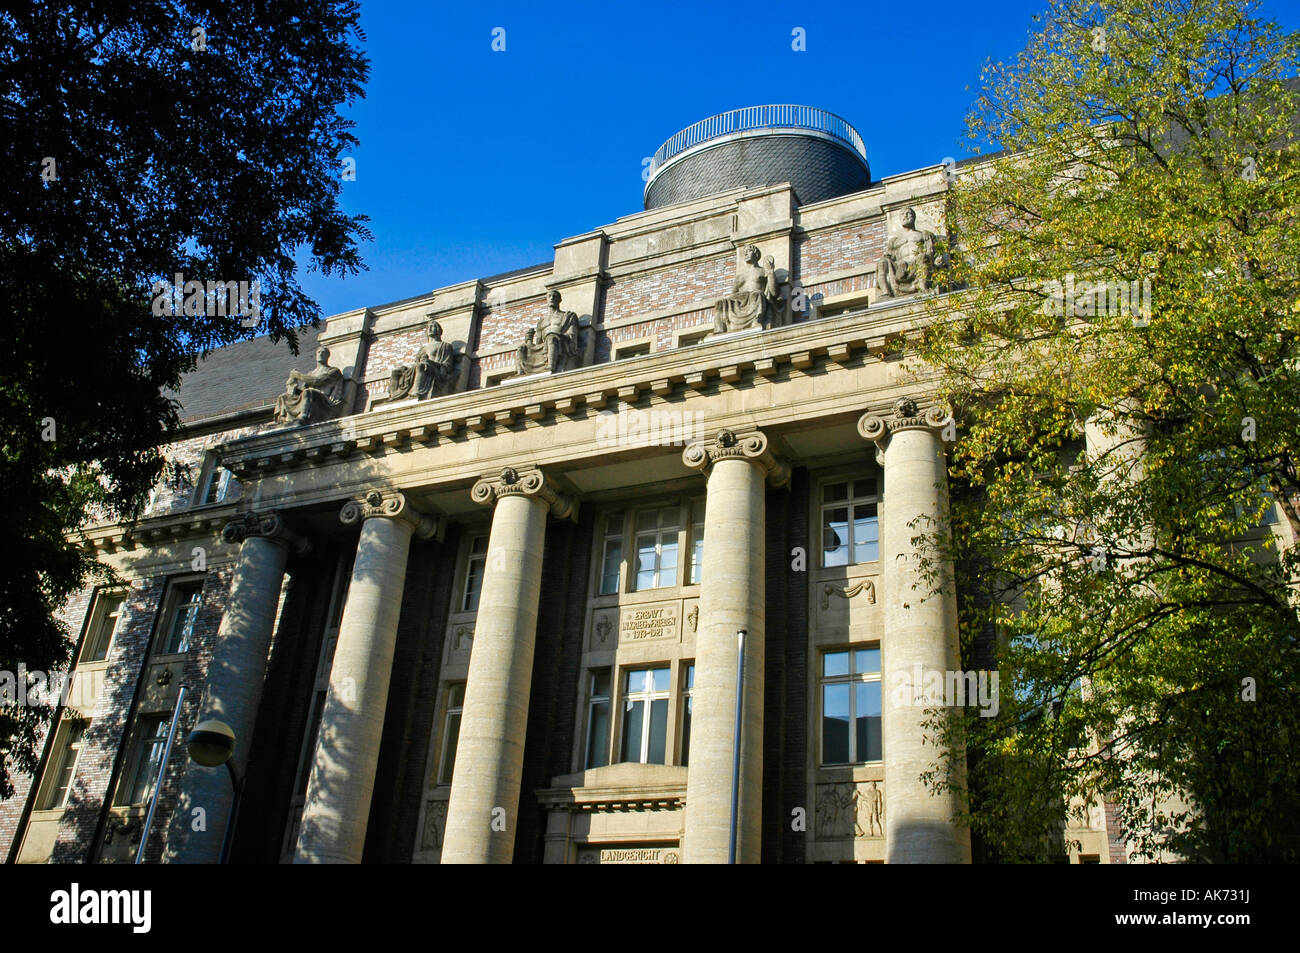 County court / Dusseldorf Stock Photo